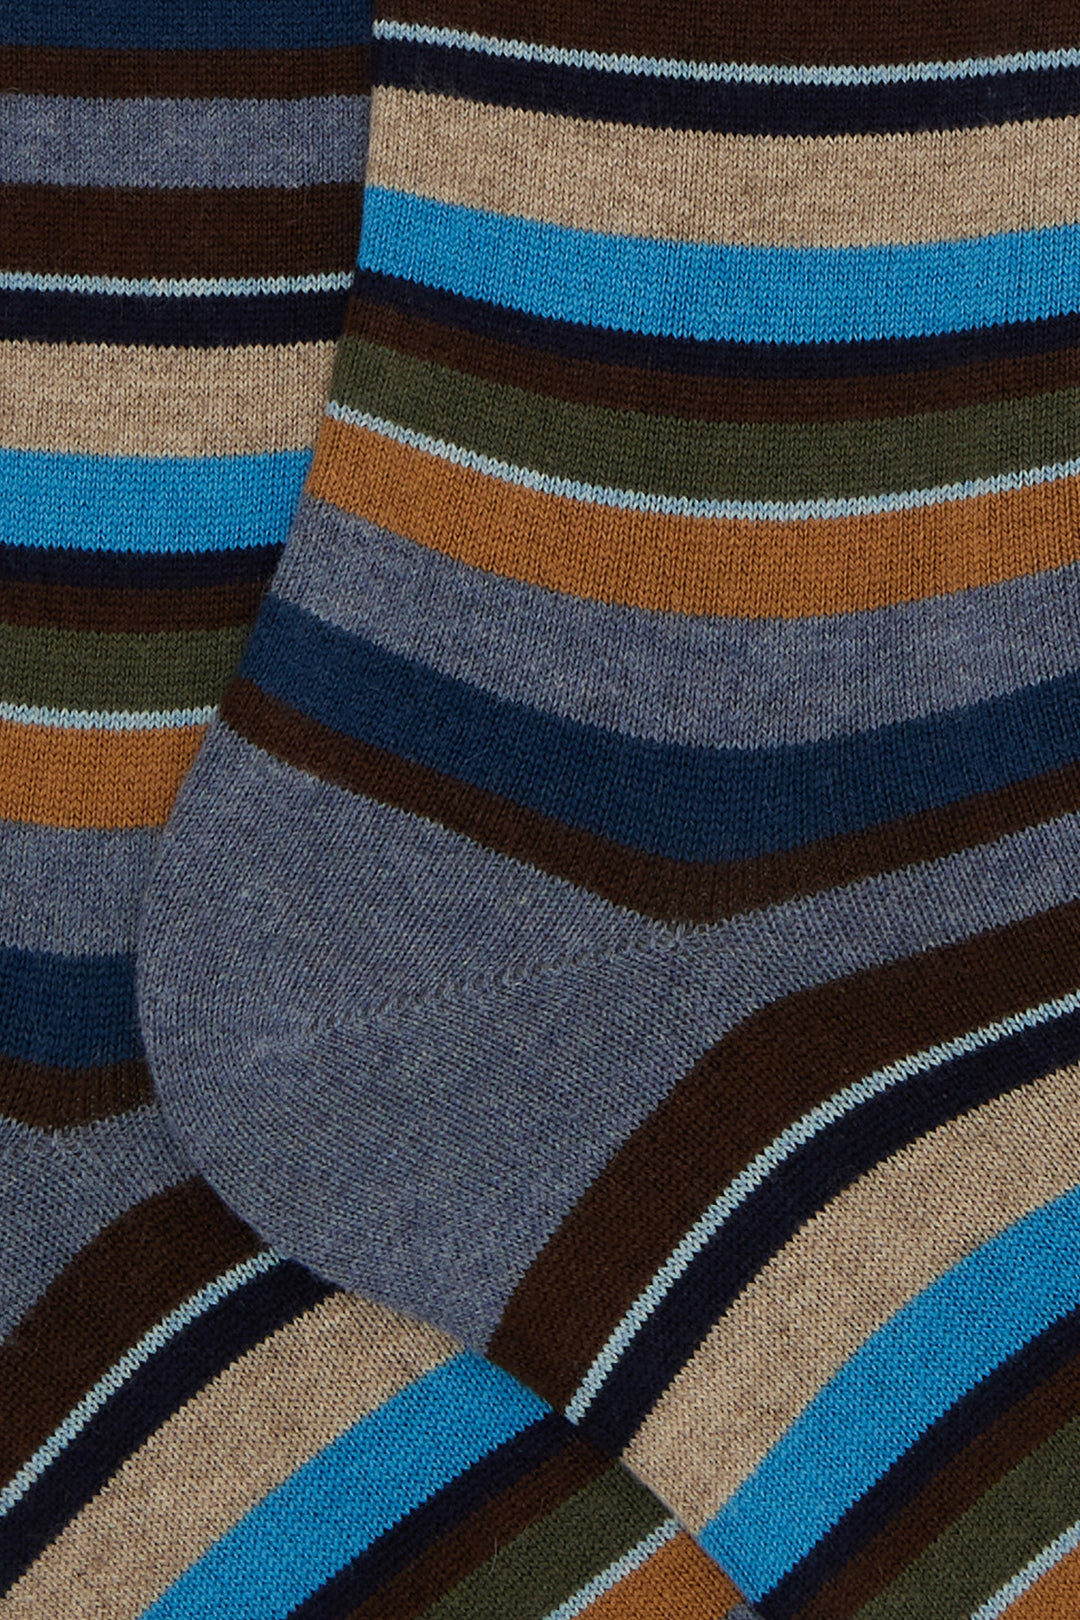 GALLO Calze lunghe cotone e cashmere azzurro righe multicolor micro - Mancinelli 1954